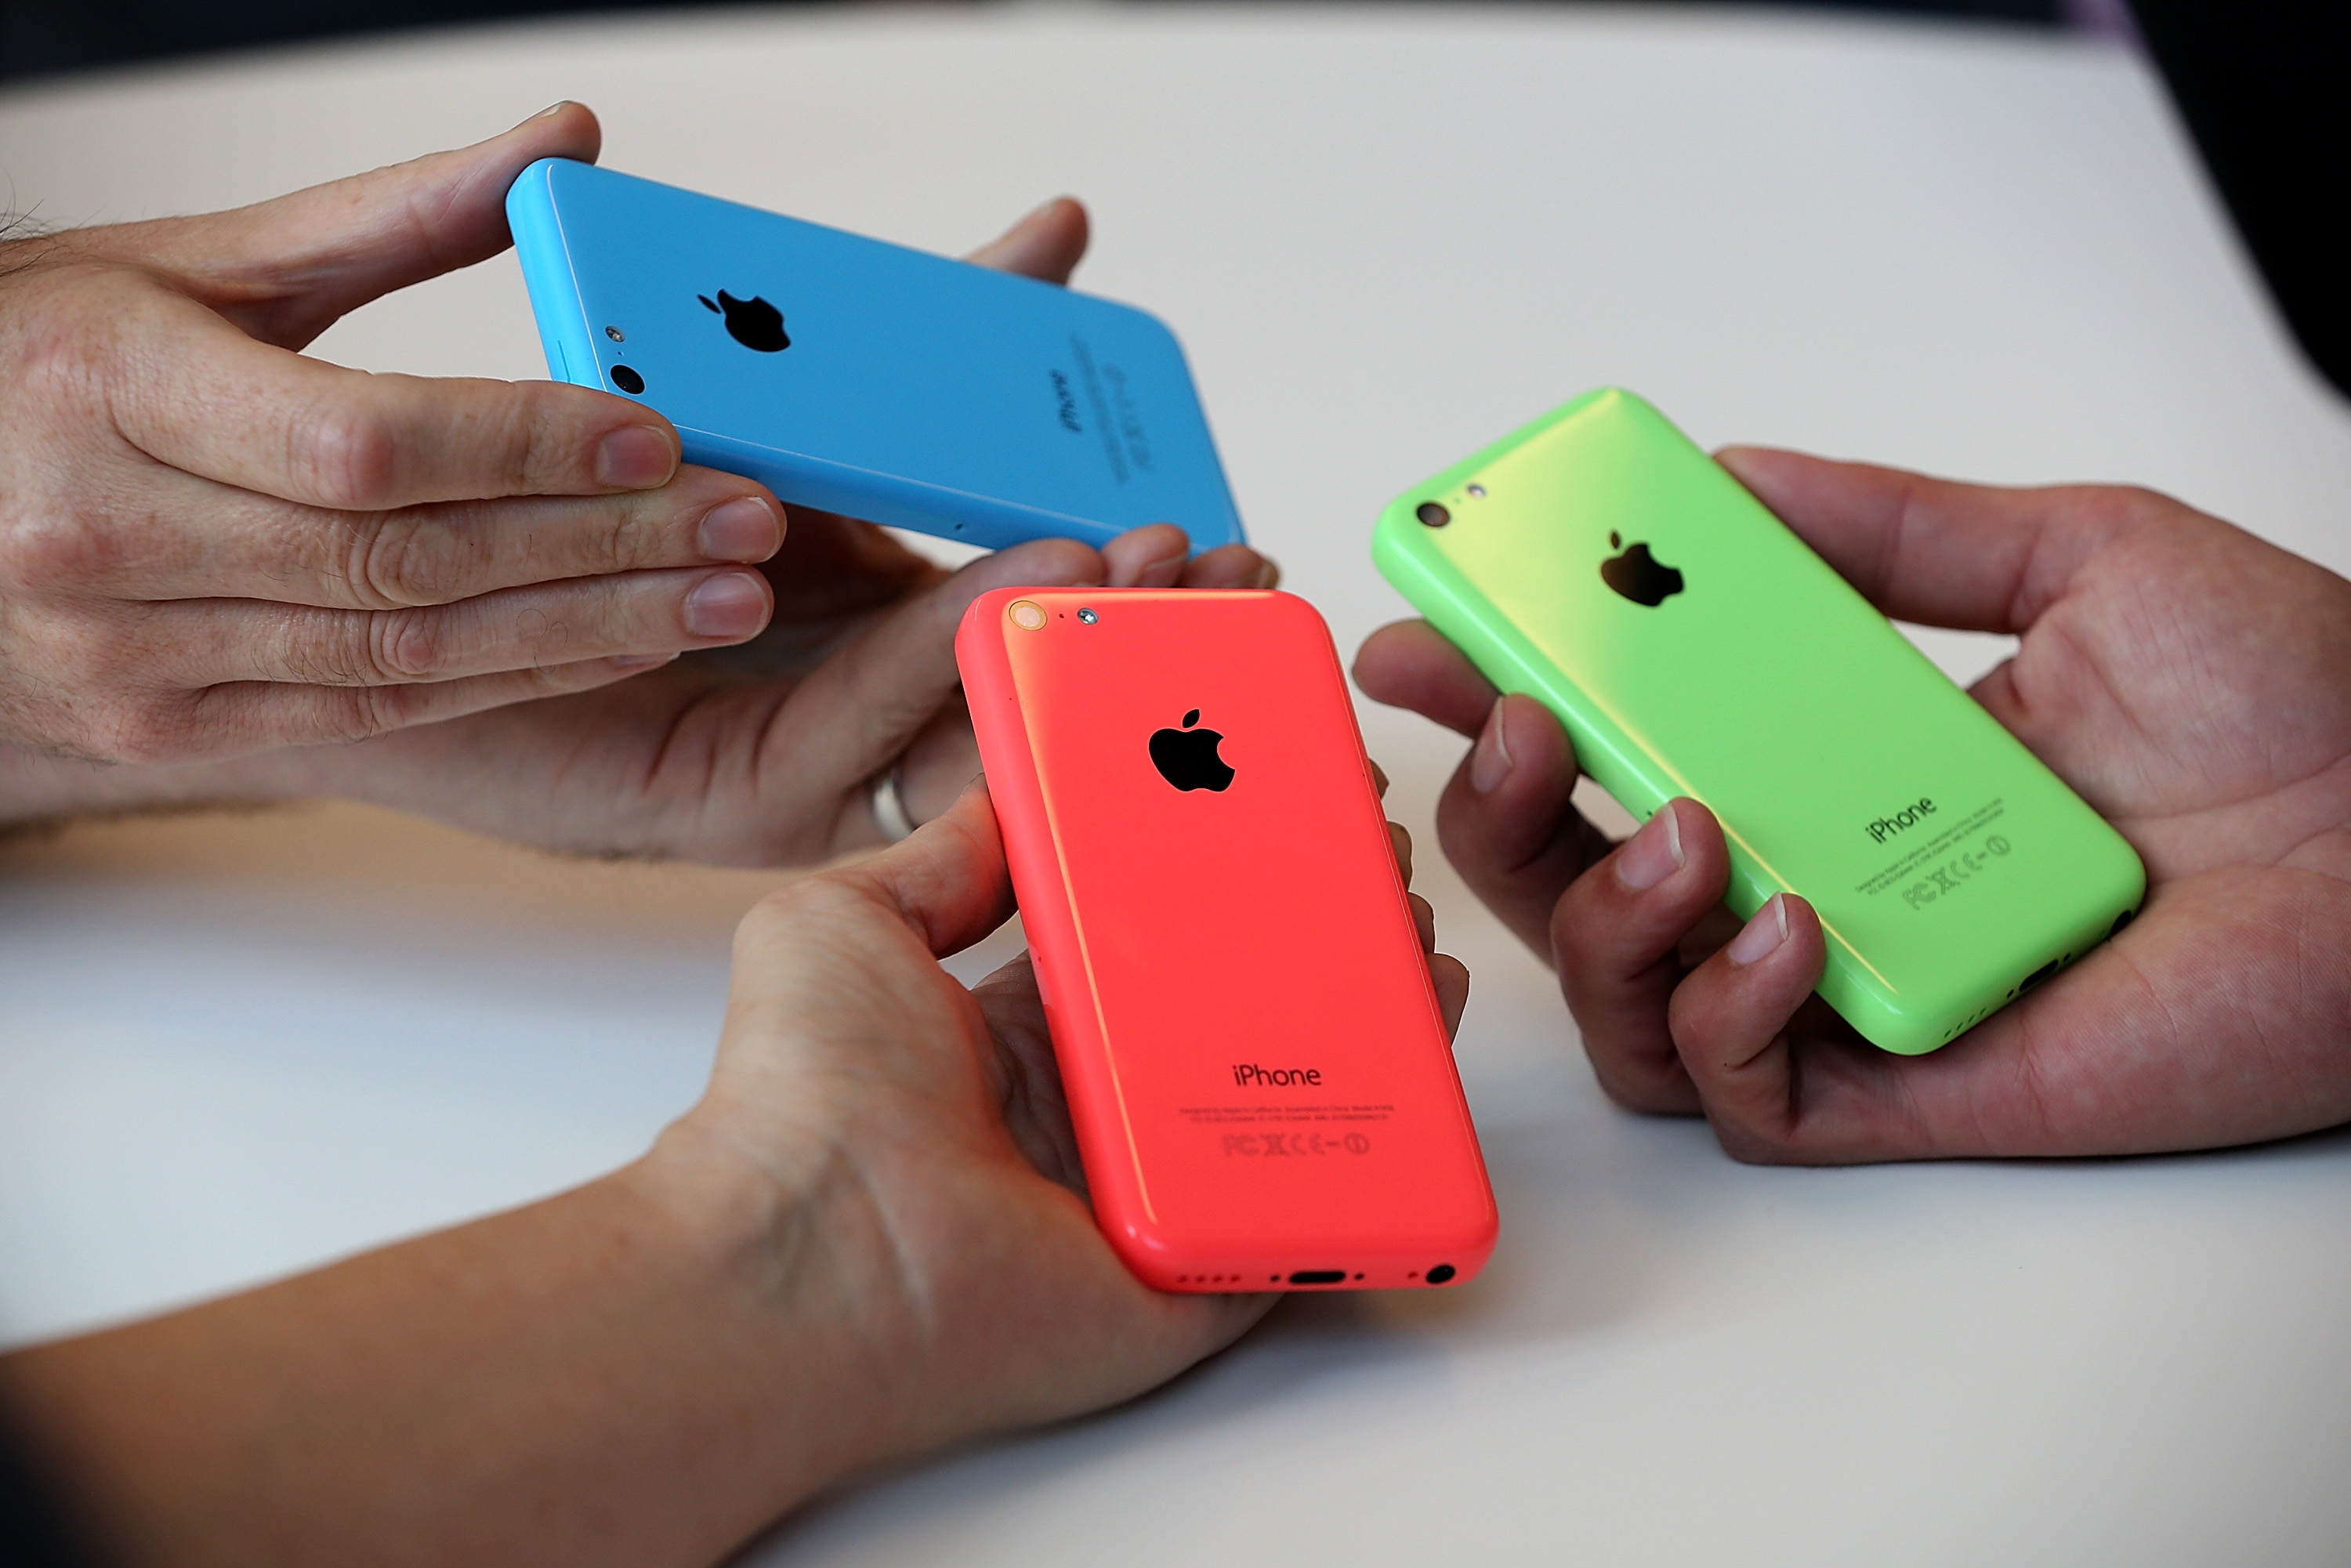 Обикновените потребители са привлечени от ярките цветове на iPhone 5C